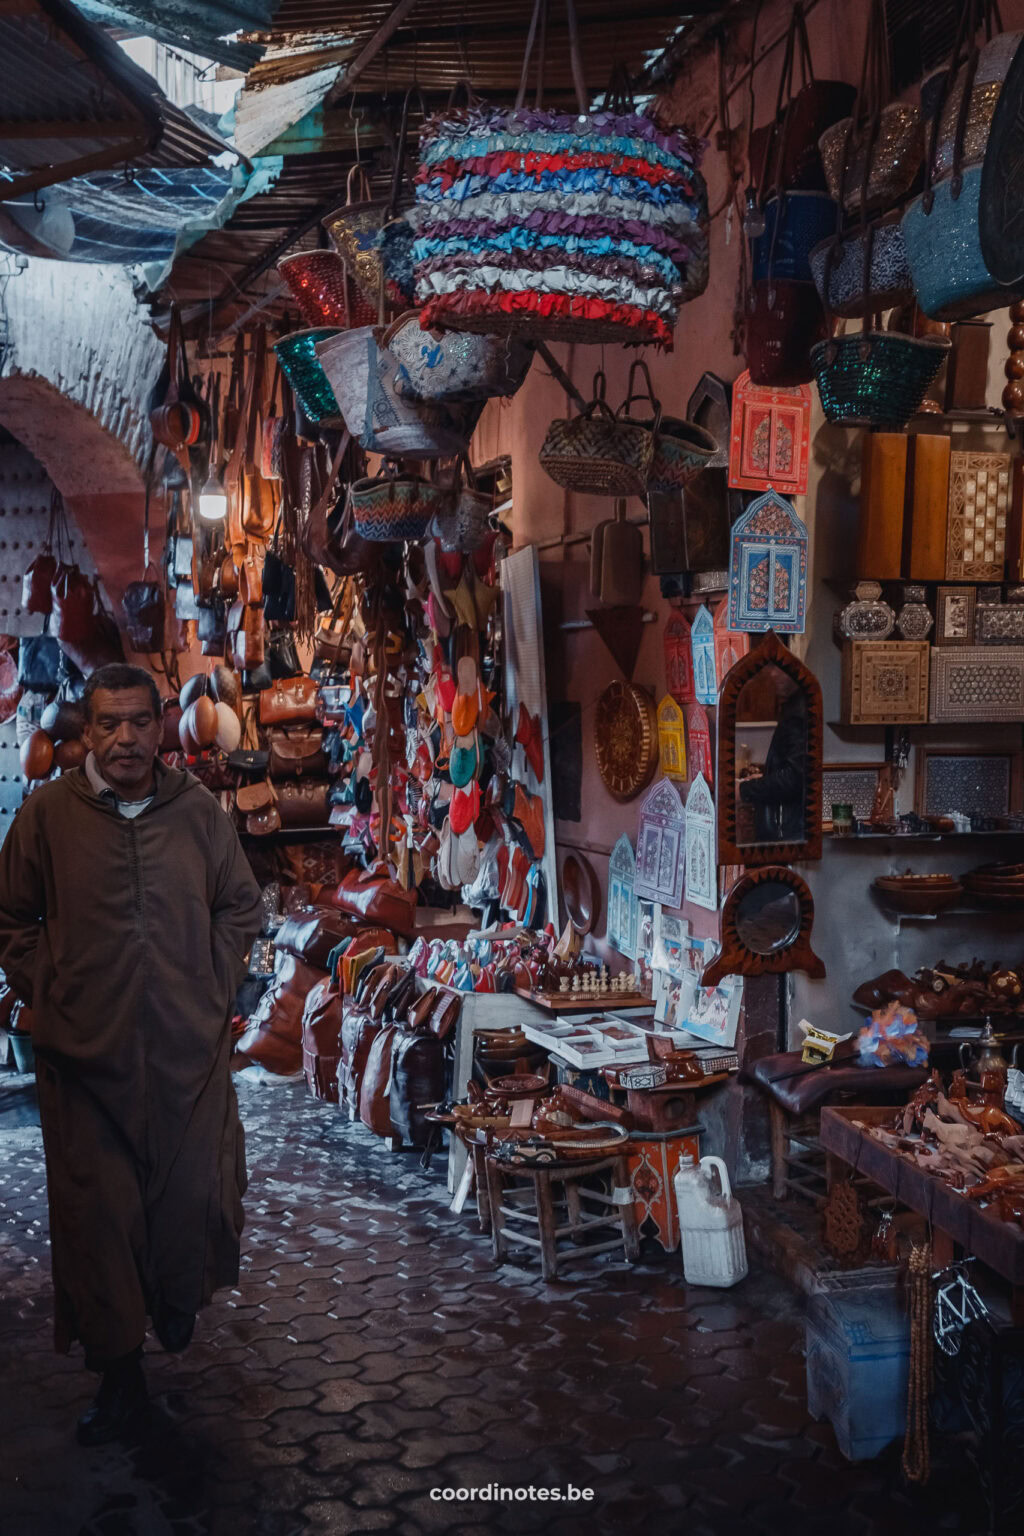 The souks in Marrakesh